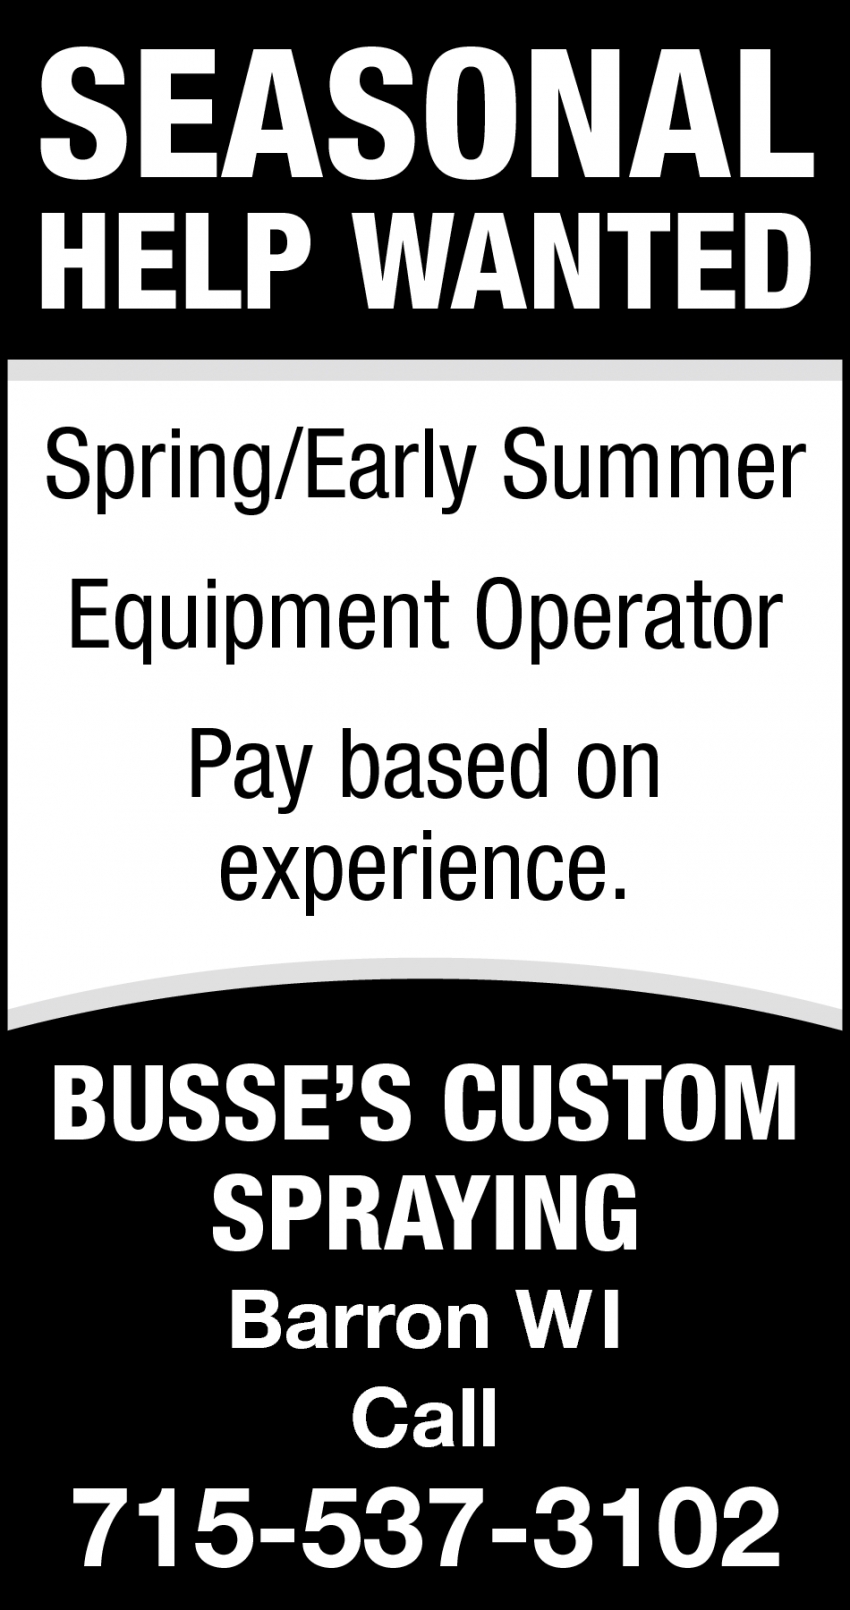 Equipment Operator